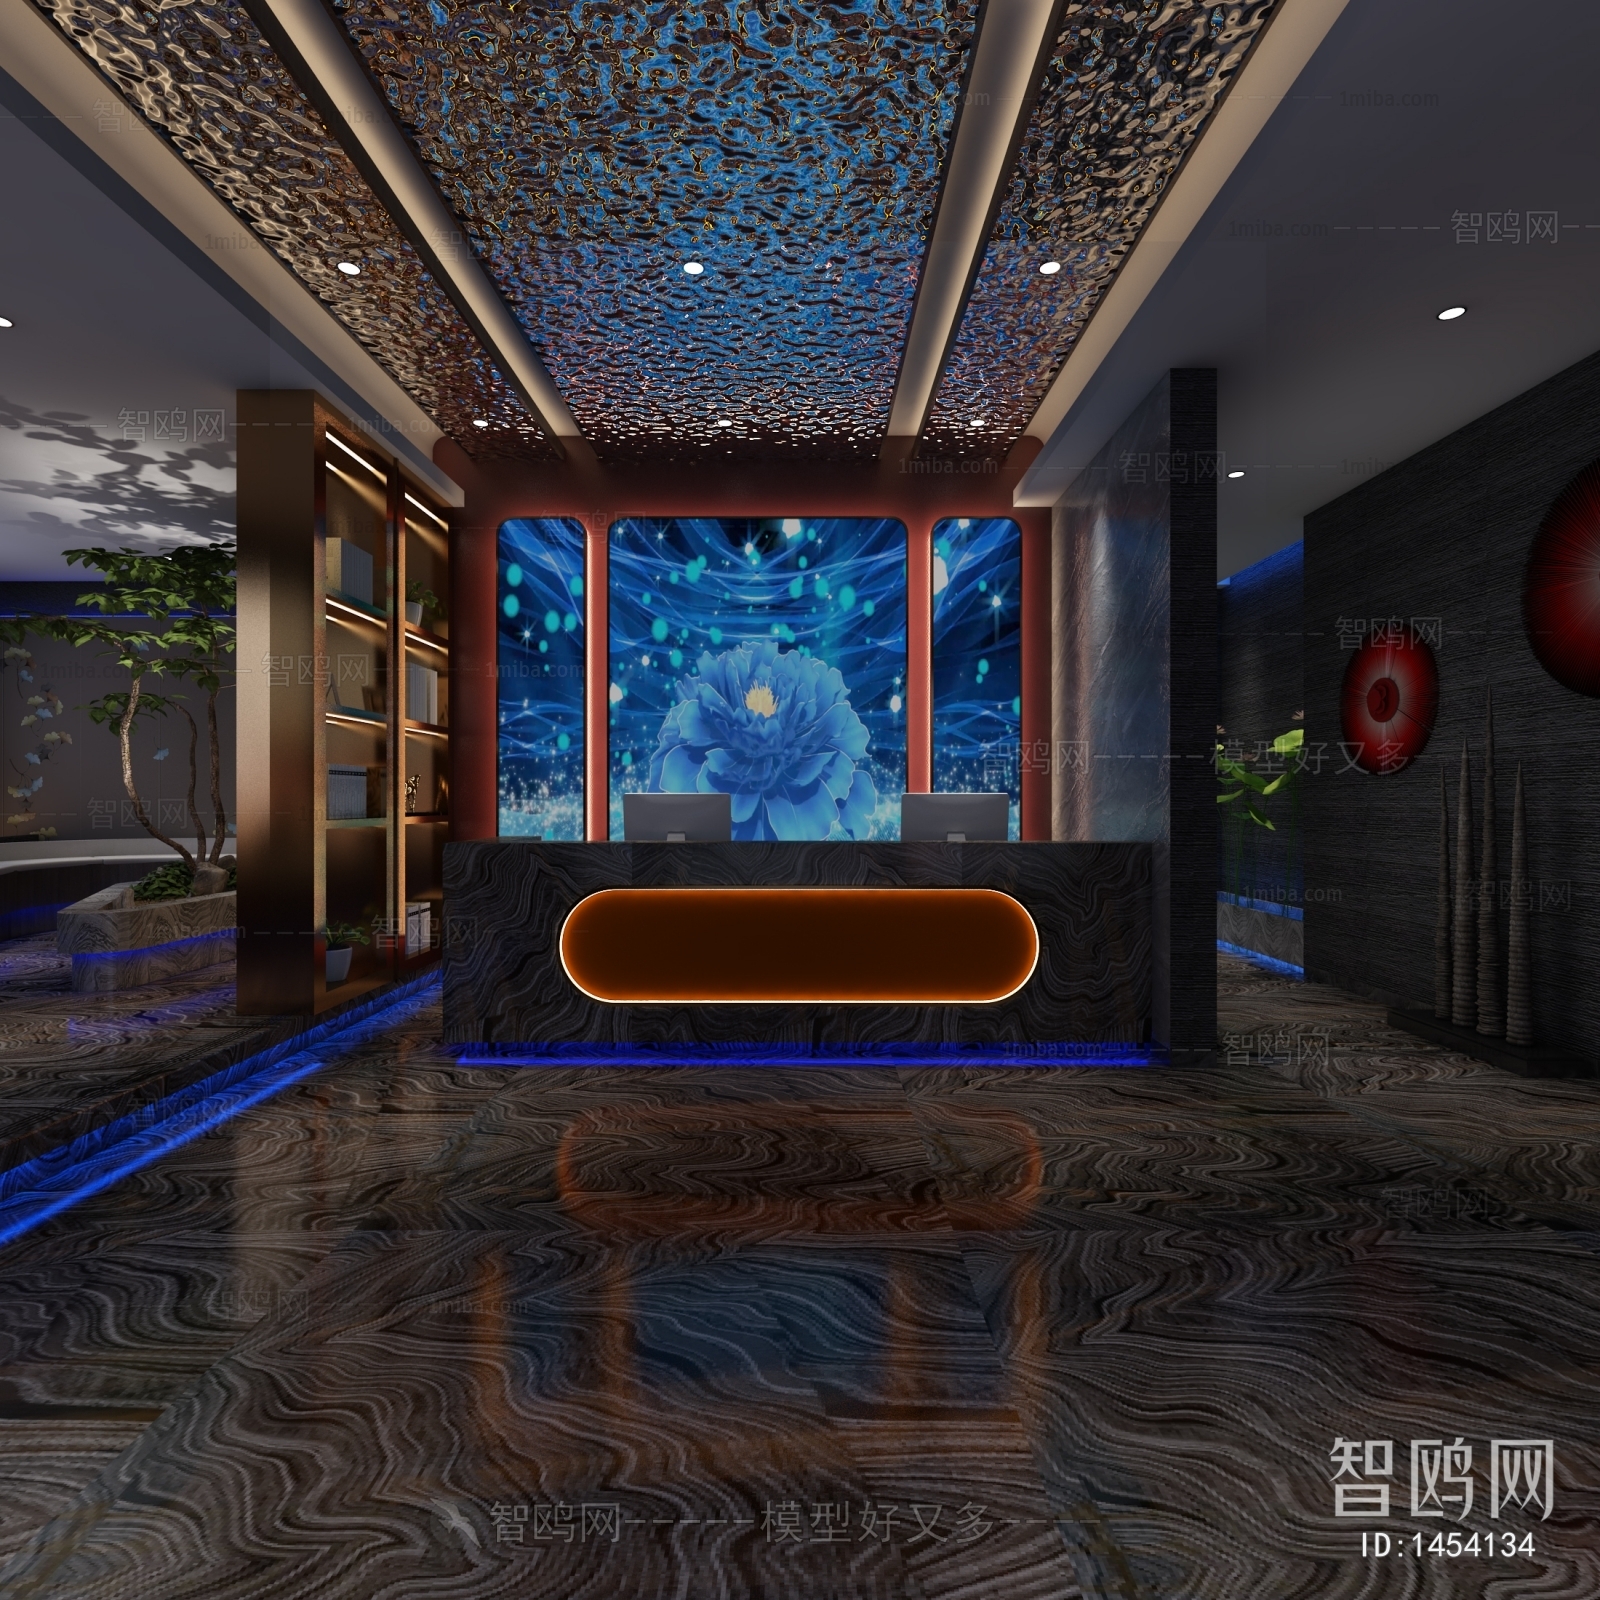 多场景-新中式洗浴中心前台+休息室